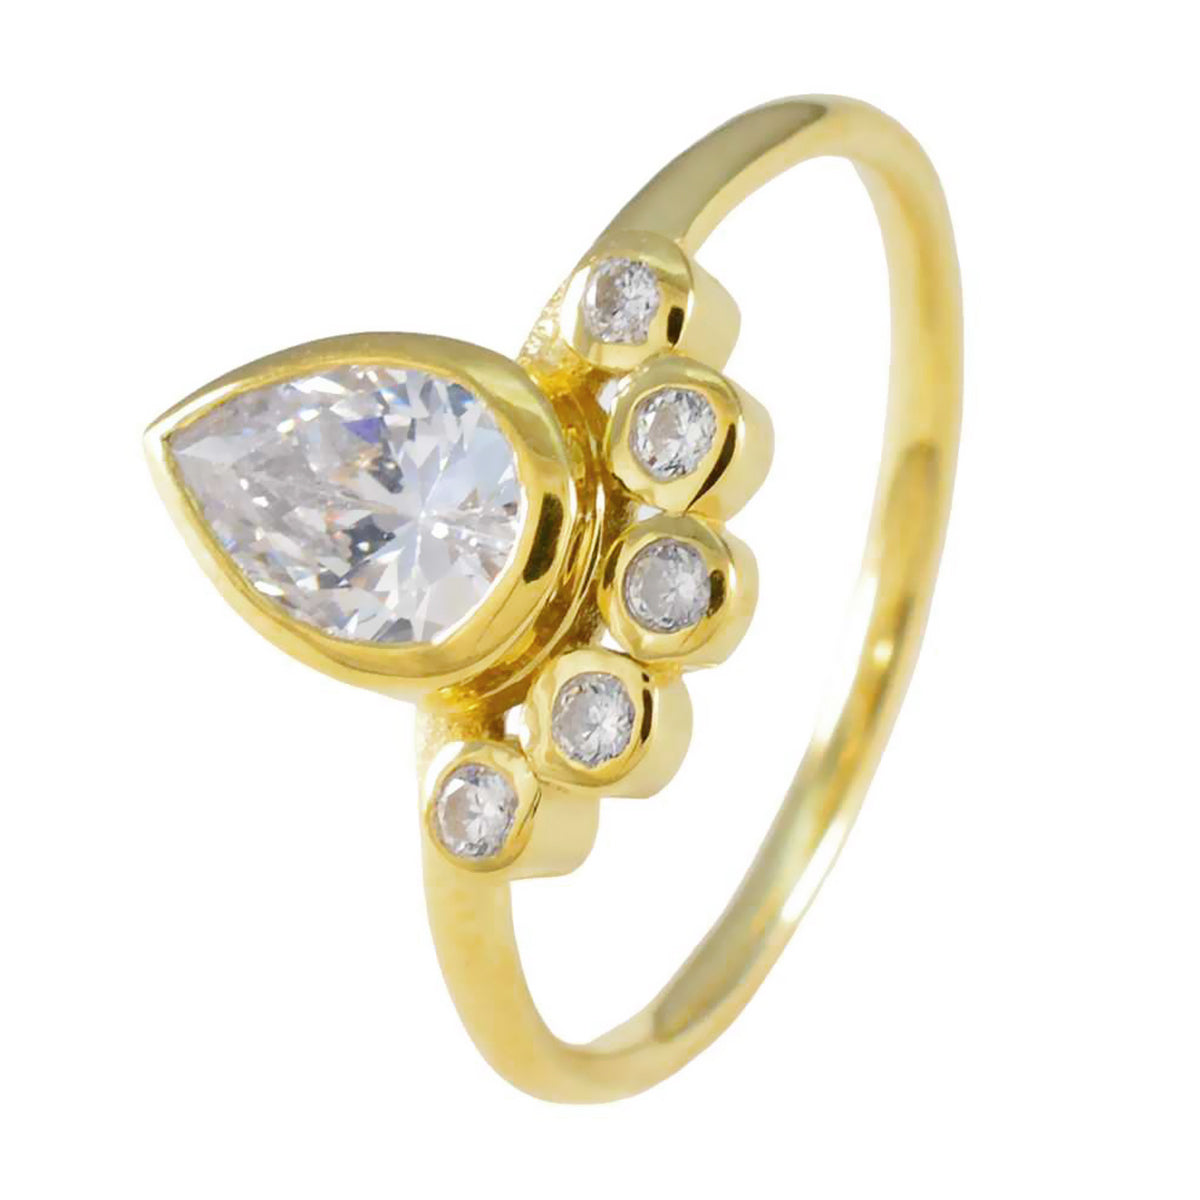 Серебряное кольцо Riyo Jaipur с покрытием из желтого золота, кольцо с безелем из белого камня cz в форме груши